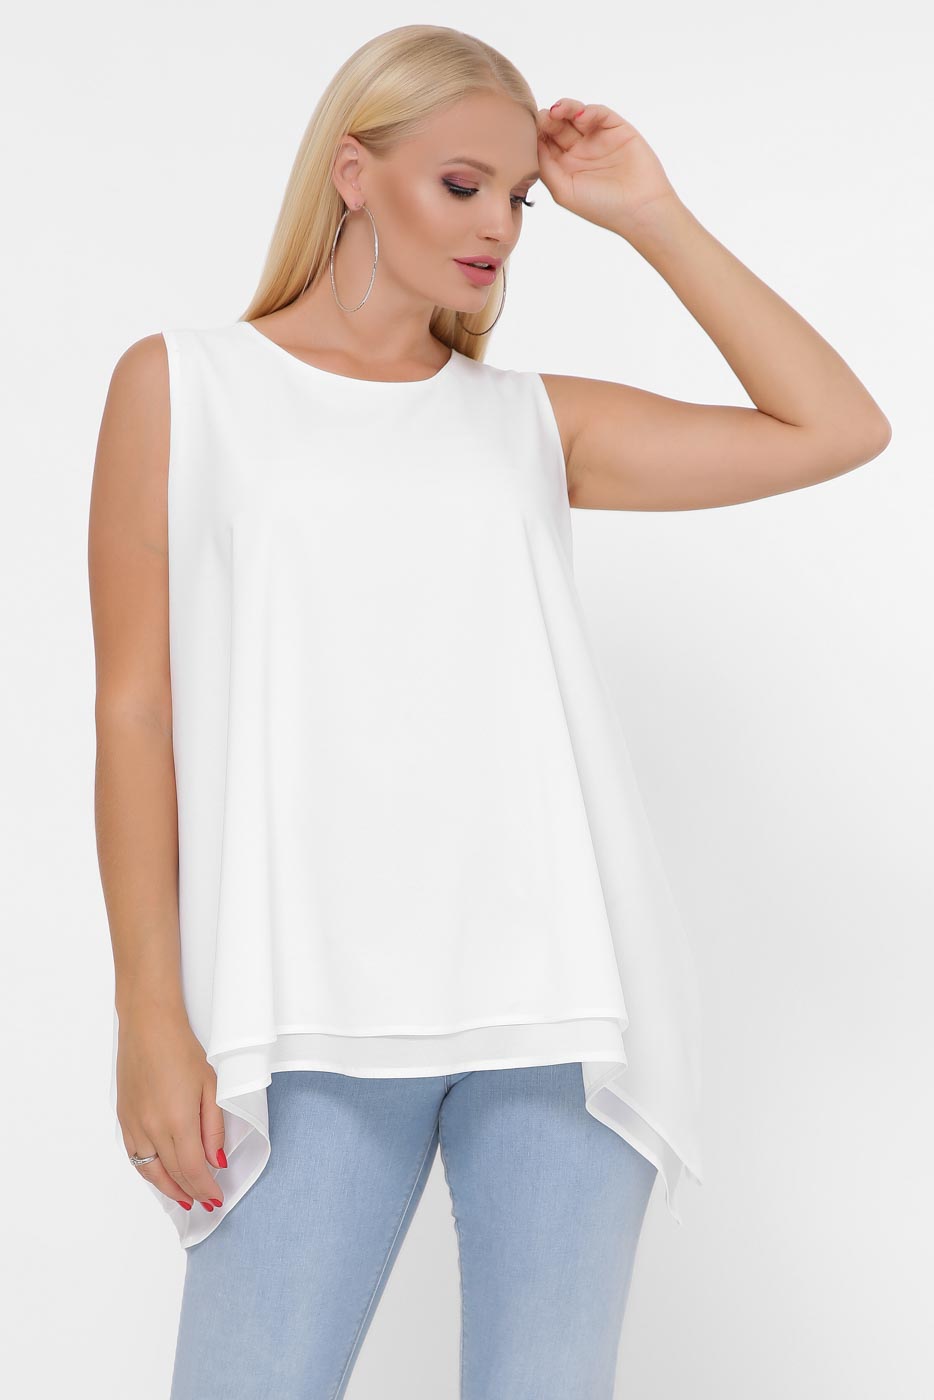 Блуза 40101-3, (Белый)